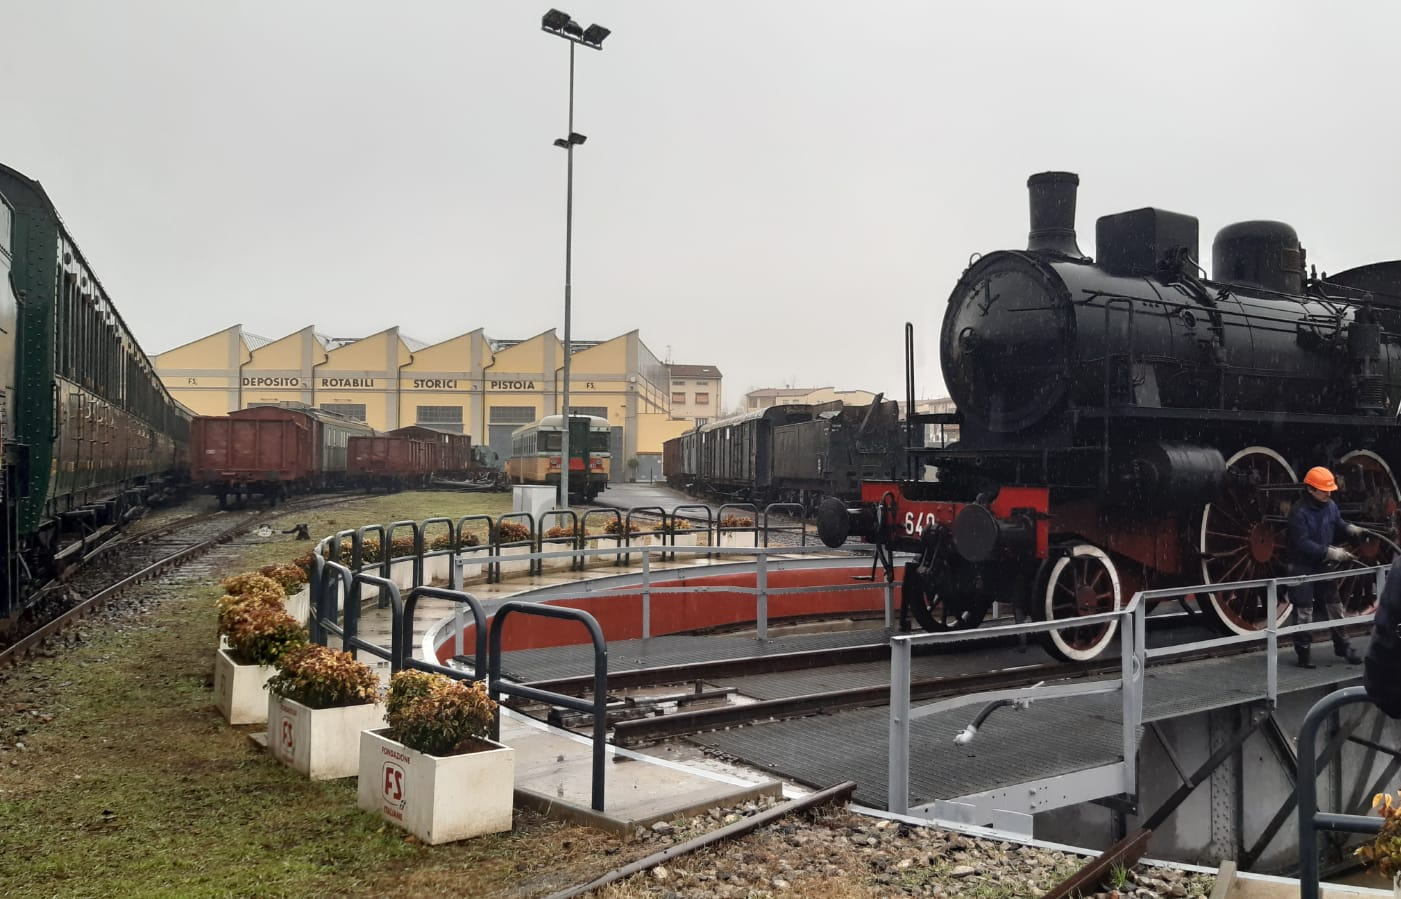 Porrettana Express, inaugurato a Pistoia l'Anno del treno turistico